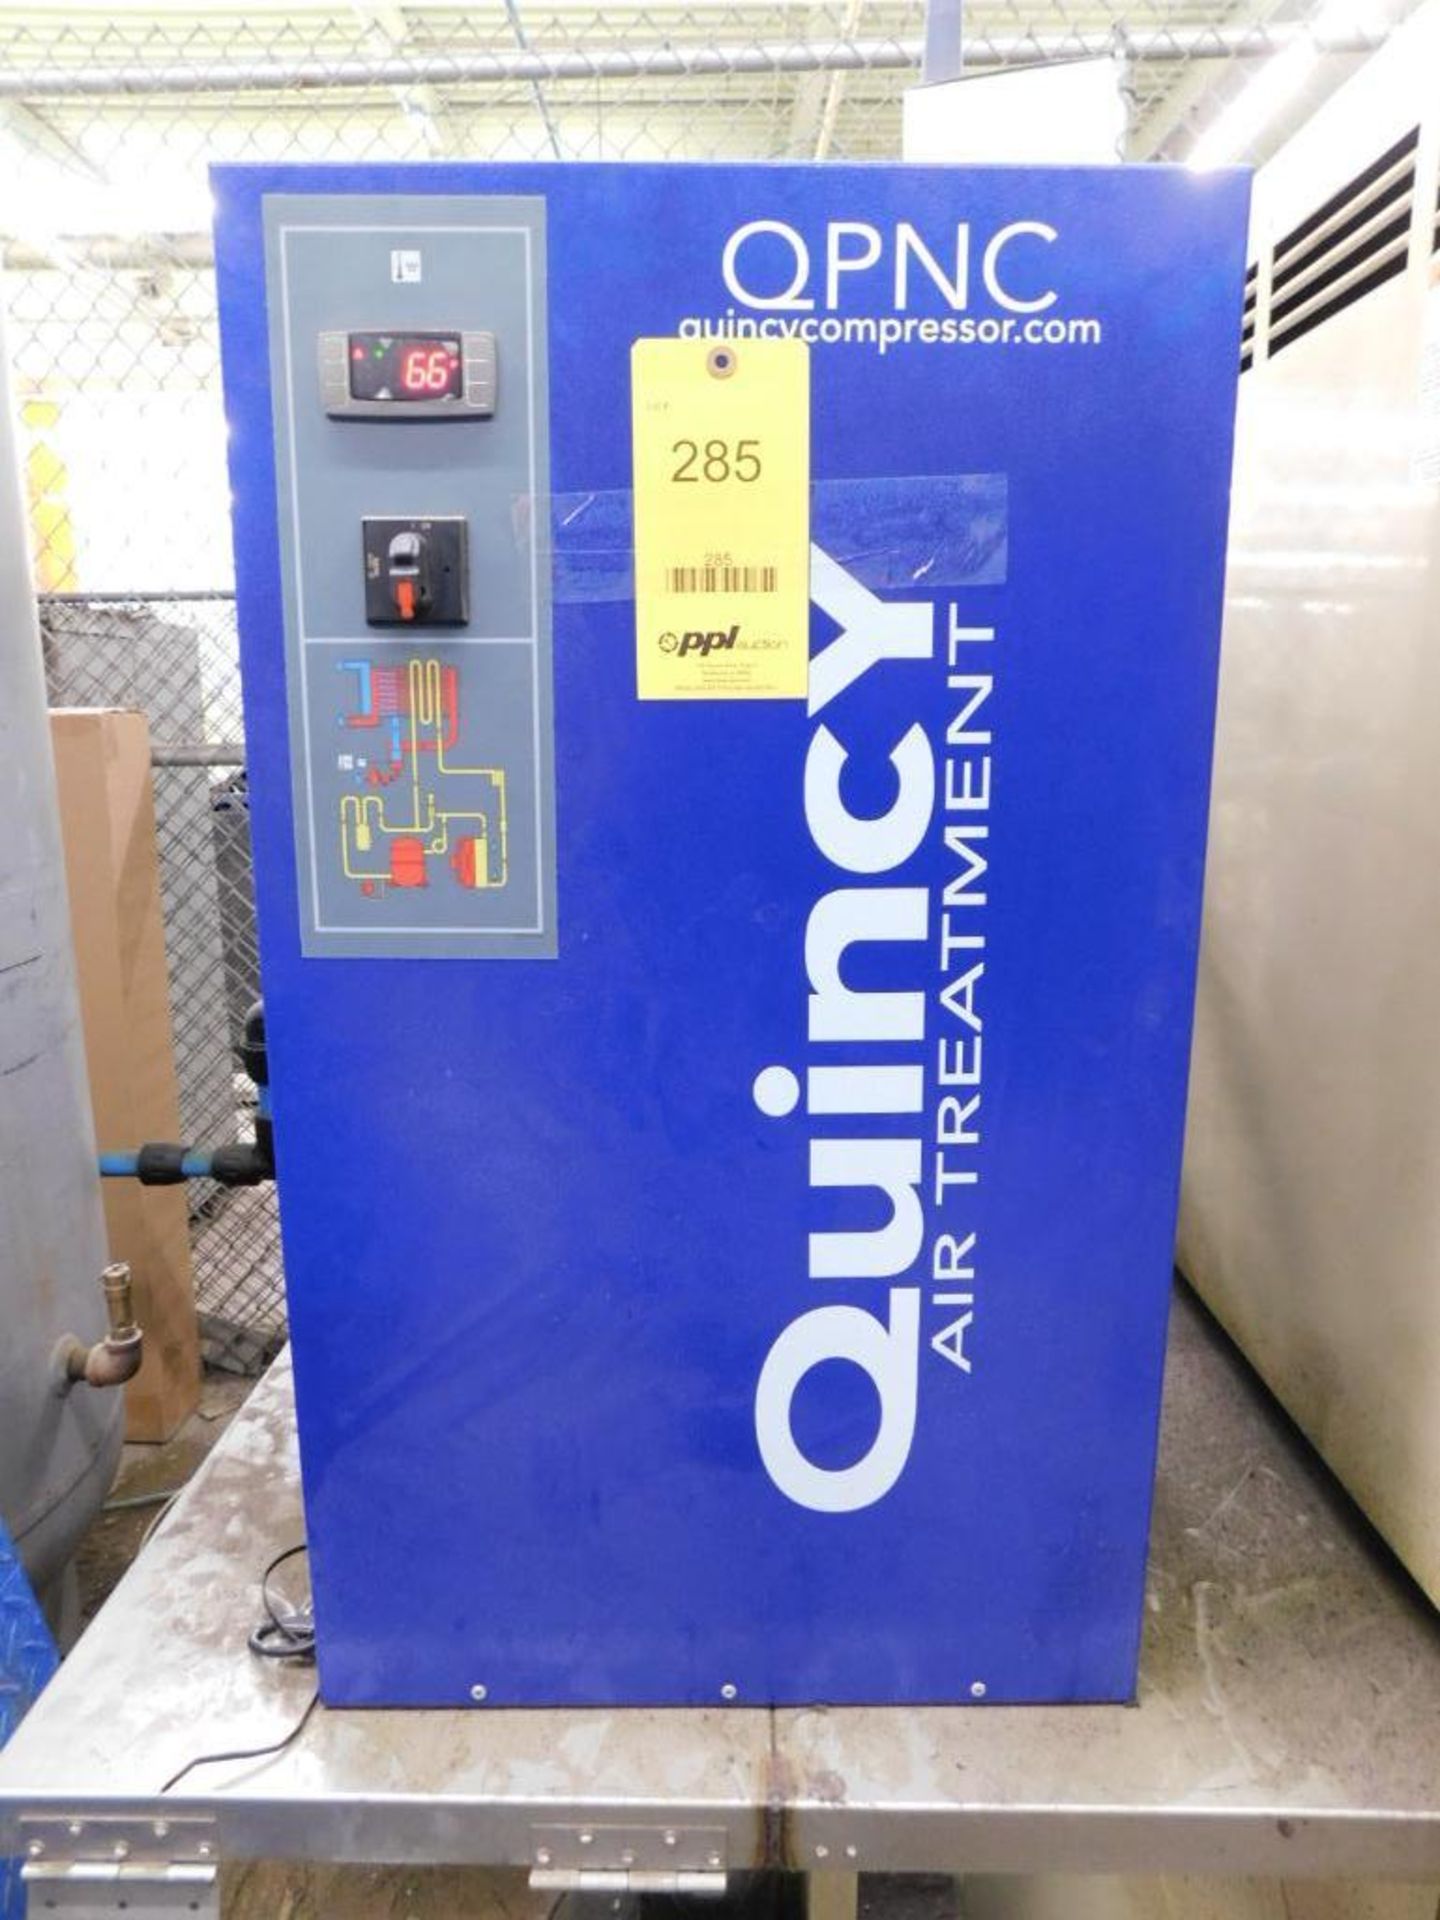 Quincy QPNC Air Dryer